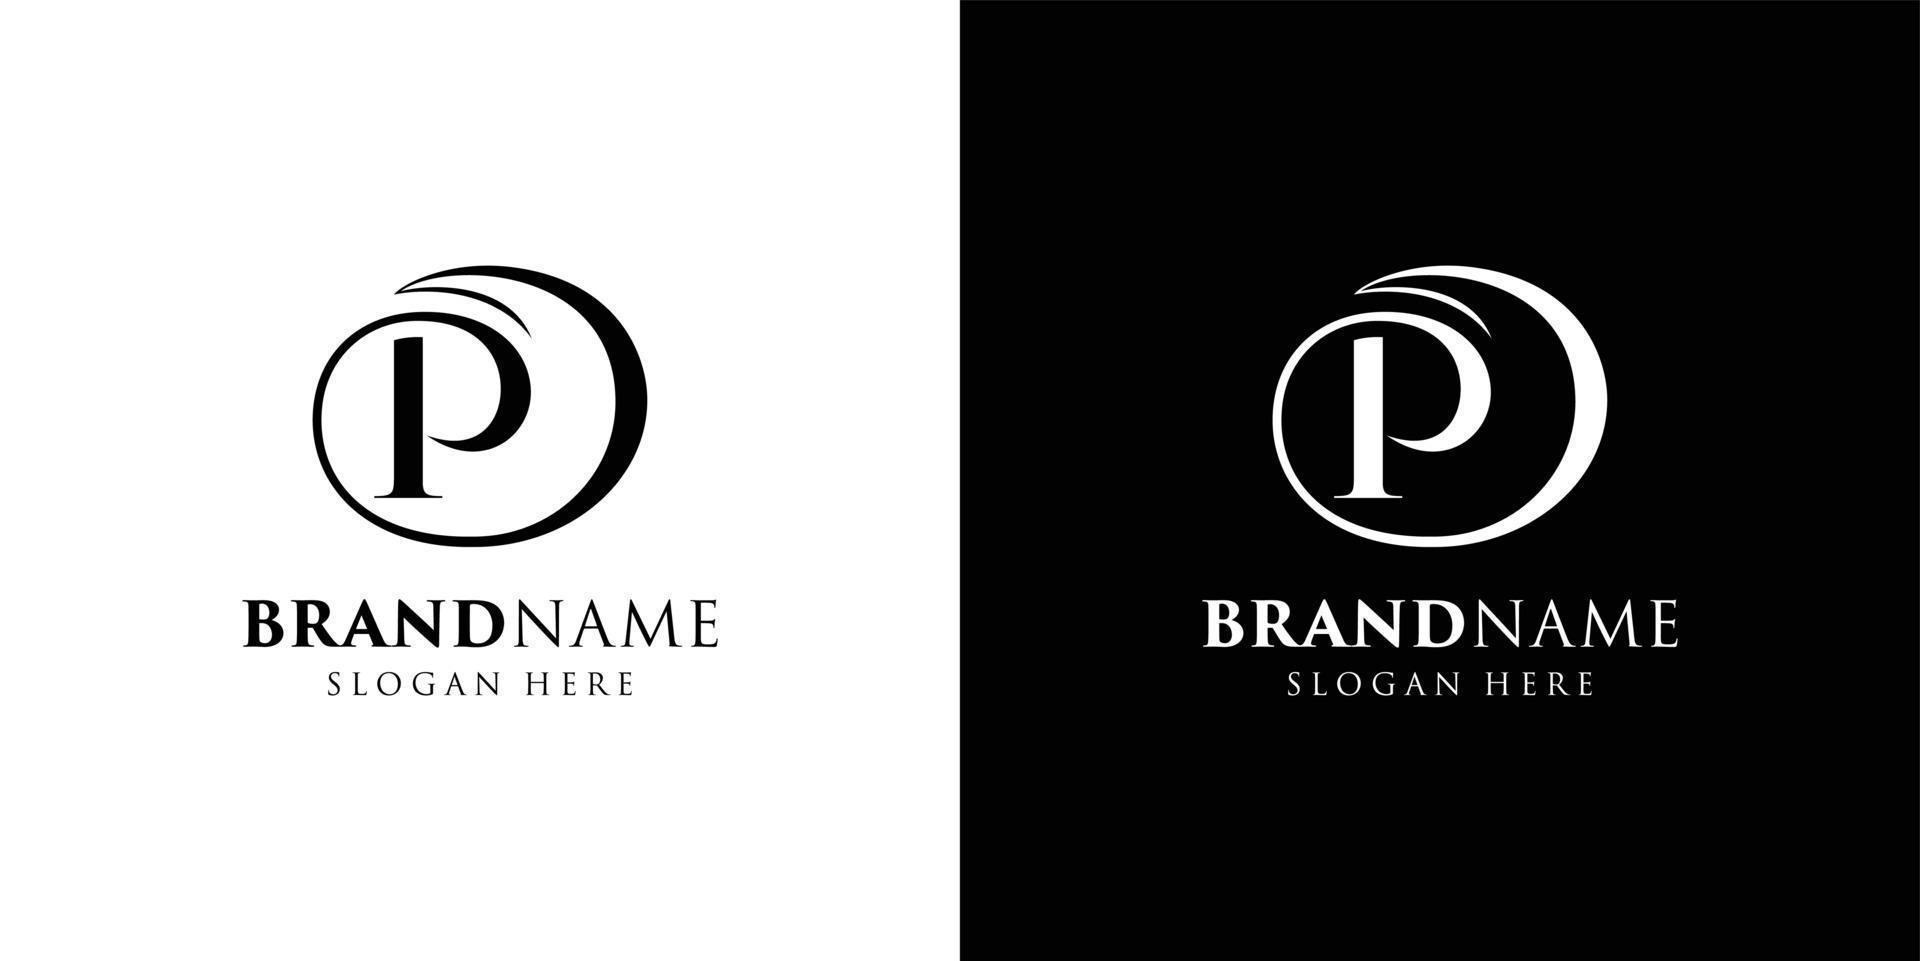 schön Brief p Logo Design, Logo p Vektor, schwarz und Weiß Farbe kreativ Logo Design Vorlage vektor